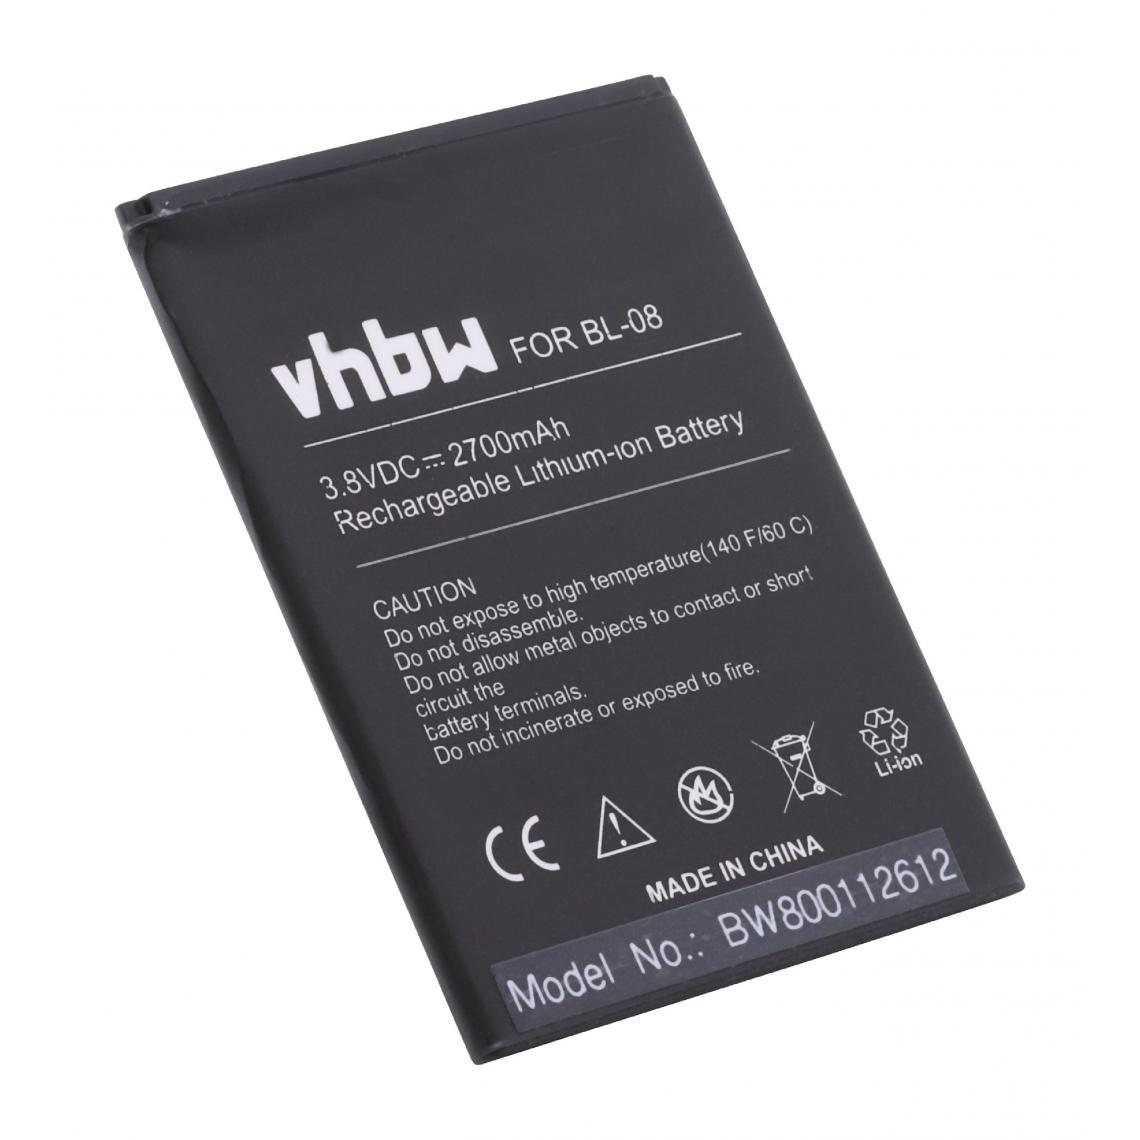 Vhbw - vhbw Batterie remplacement pour THL BL-08 pour smartphone (2700mAh, 3,8V, Li-ion) - Batterie téléphone